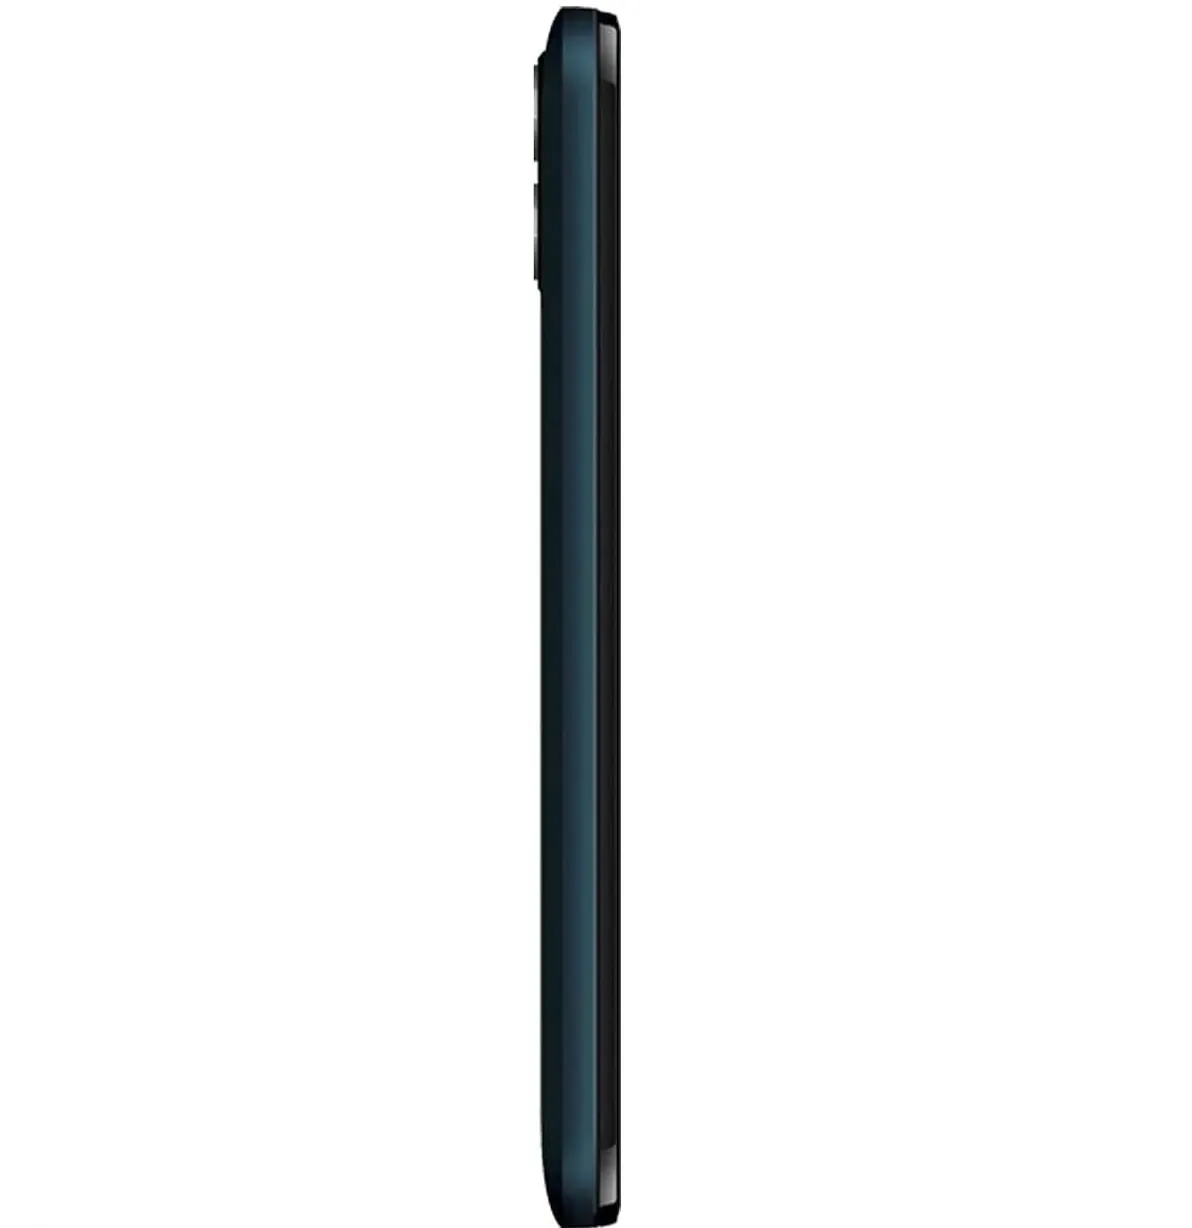 Celular Hisense U50 Con Desbloqueo Facial 32GB 2GB Ram Azul